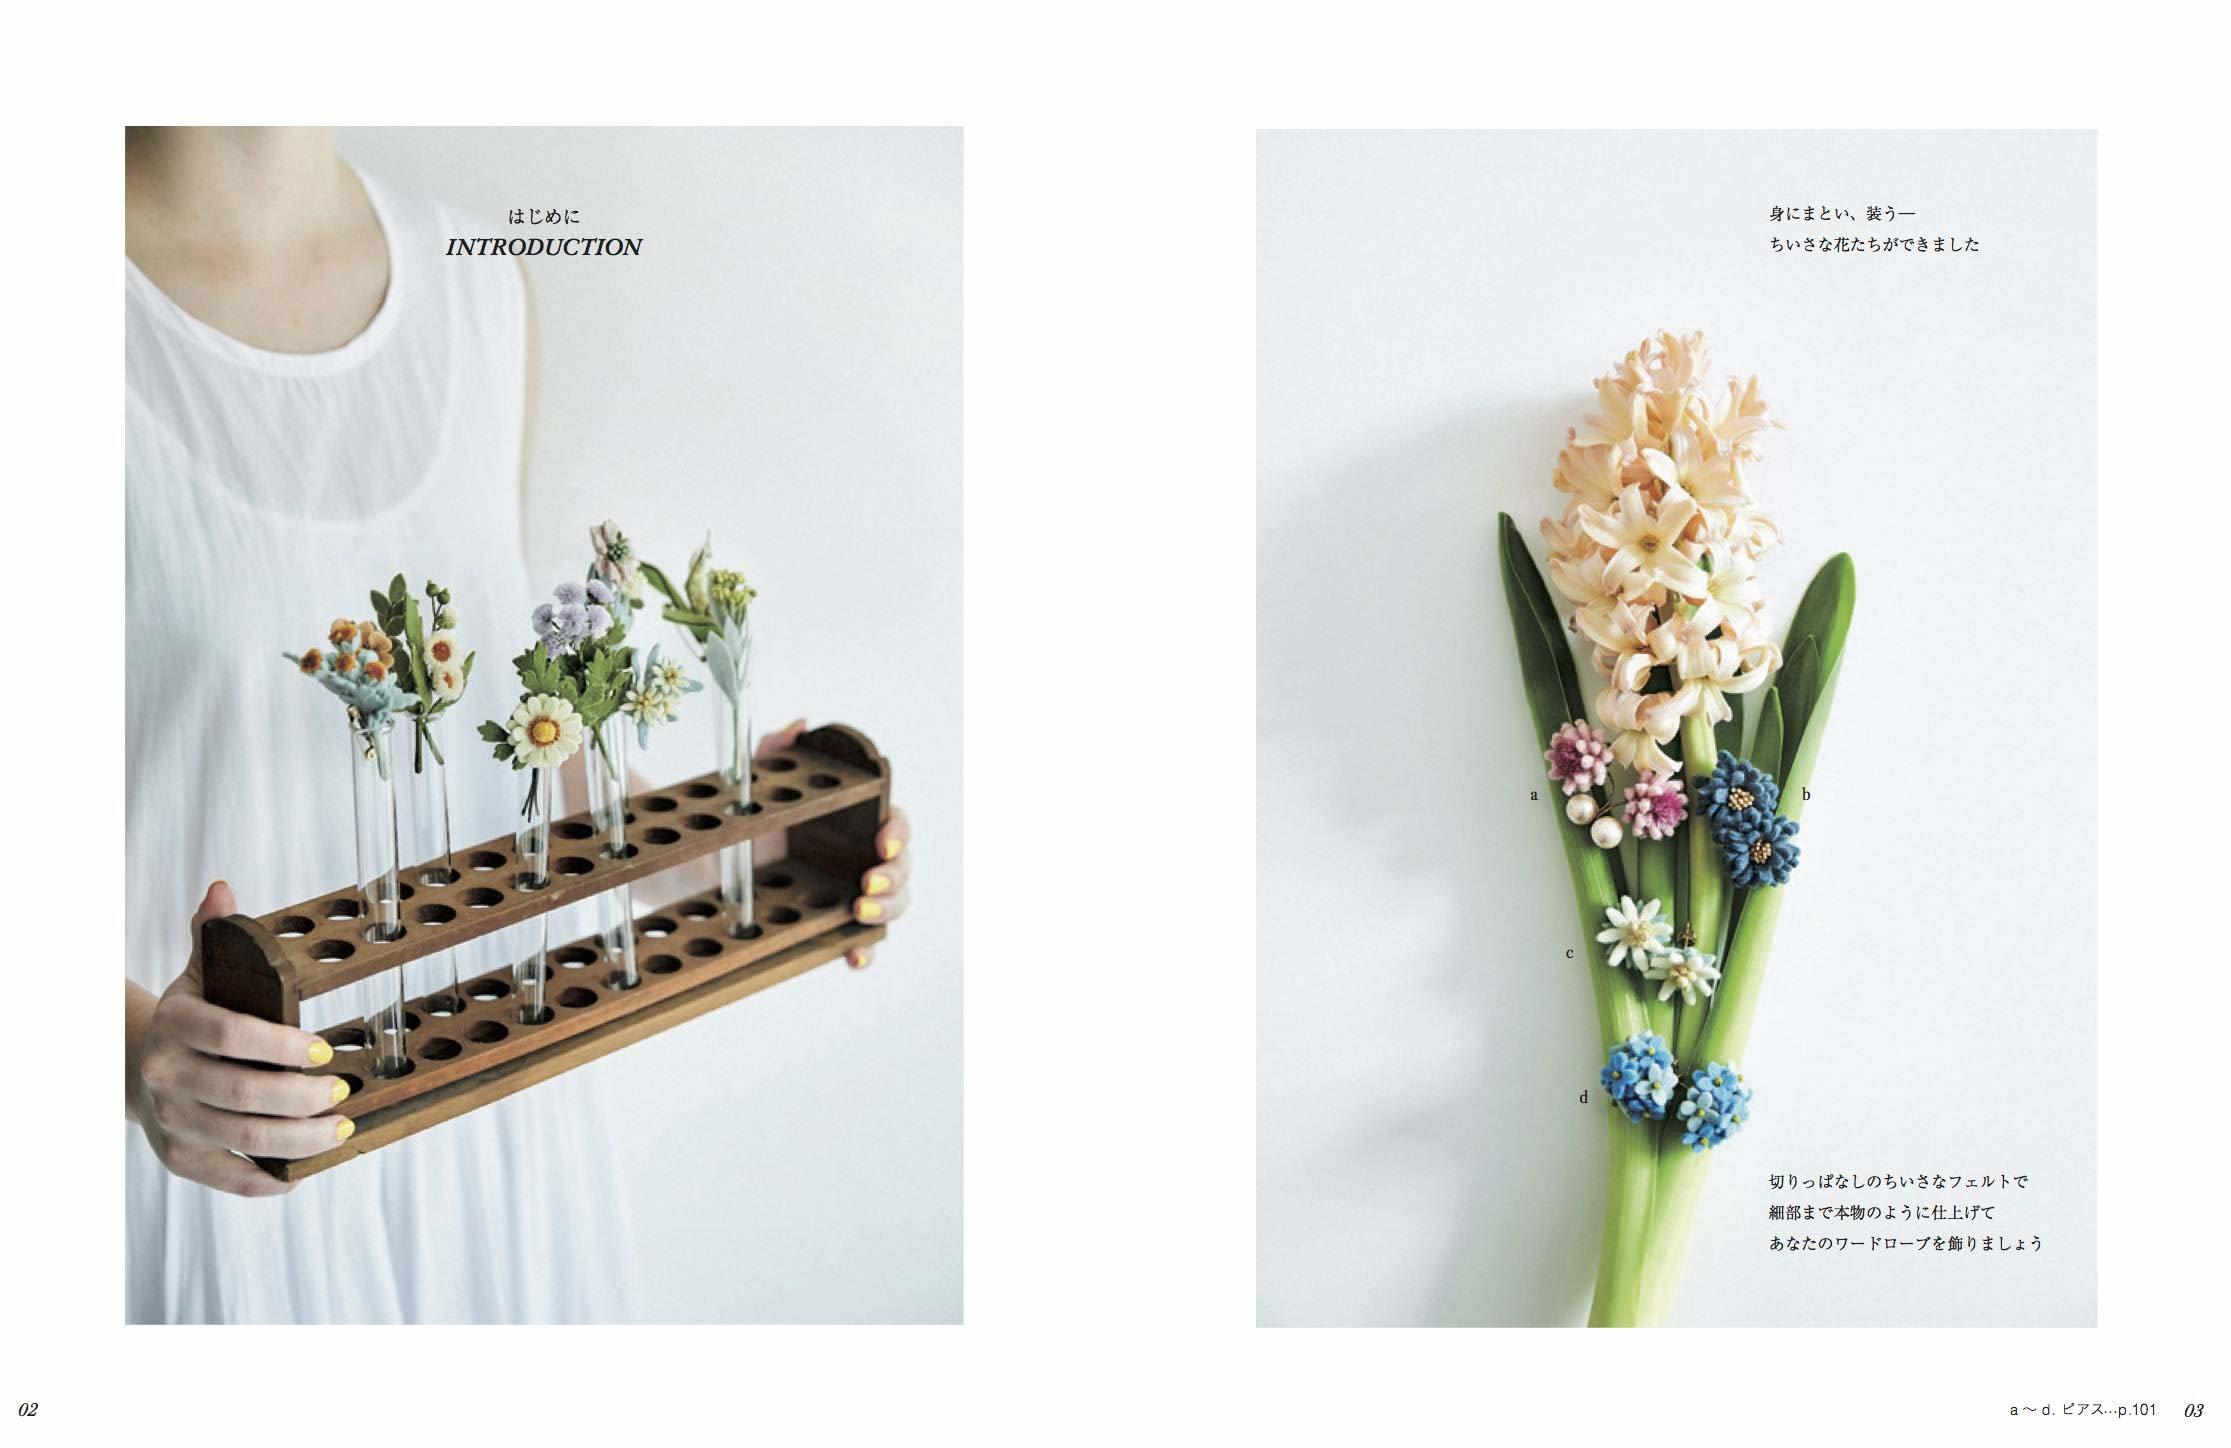 春のお花達 いちばんちいさなフェルトの花アクセサリー から フェルタート R オフフープ R 立体刺繍作家pienisieniのブログ